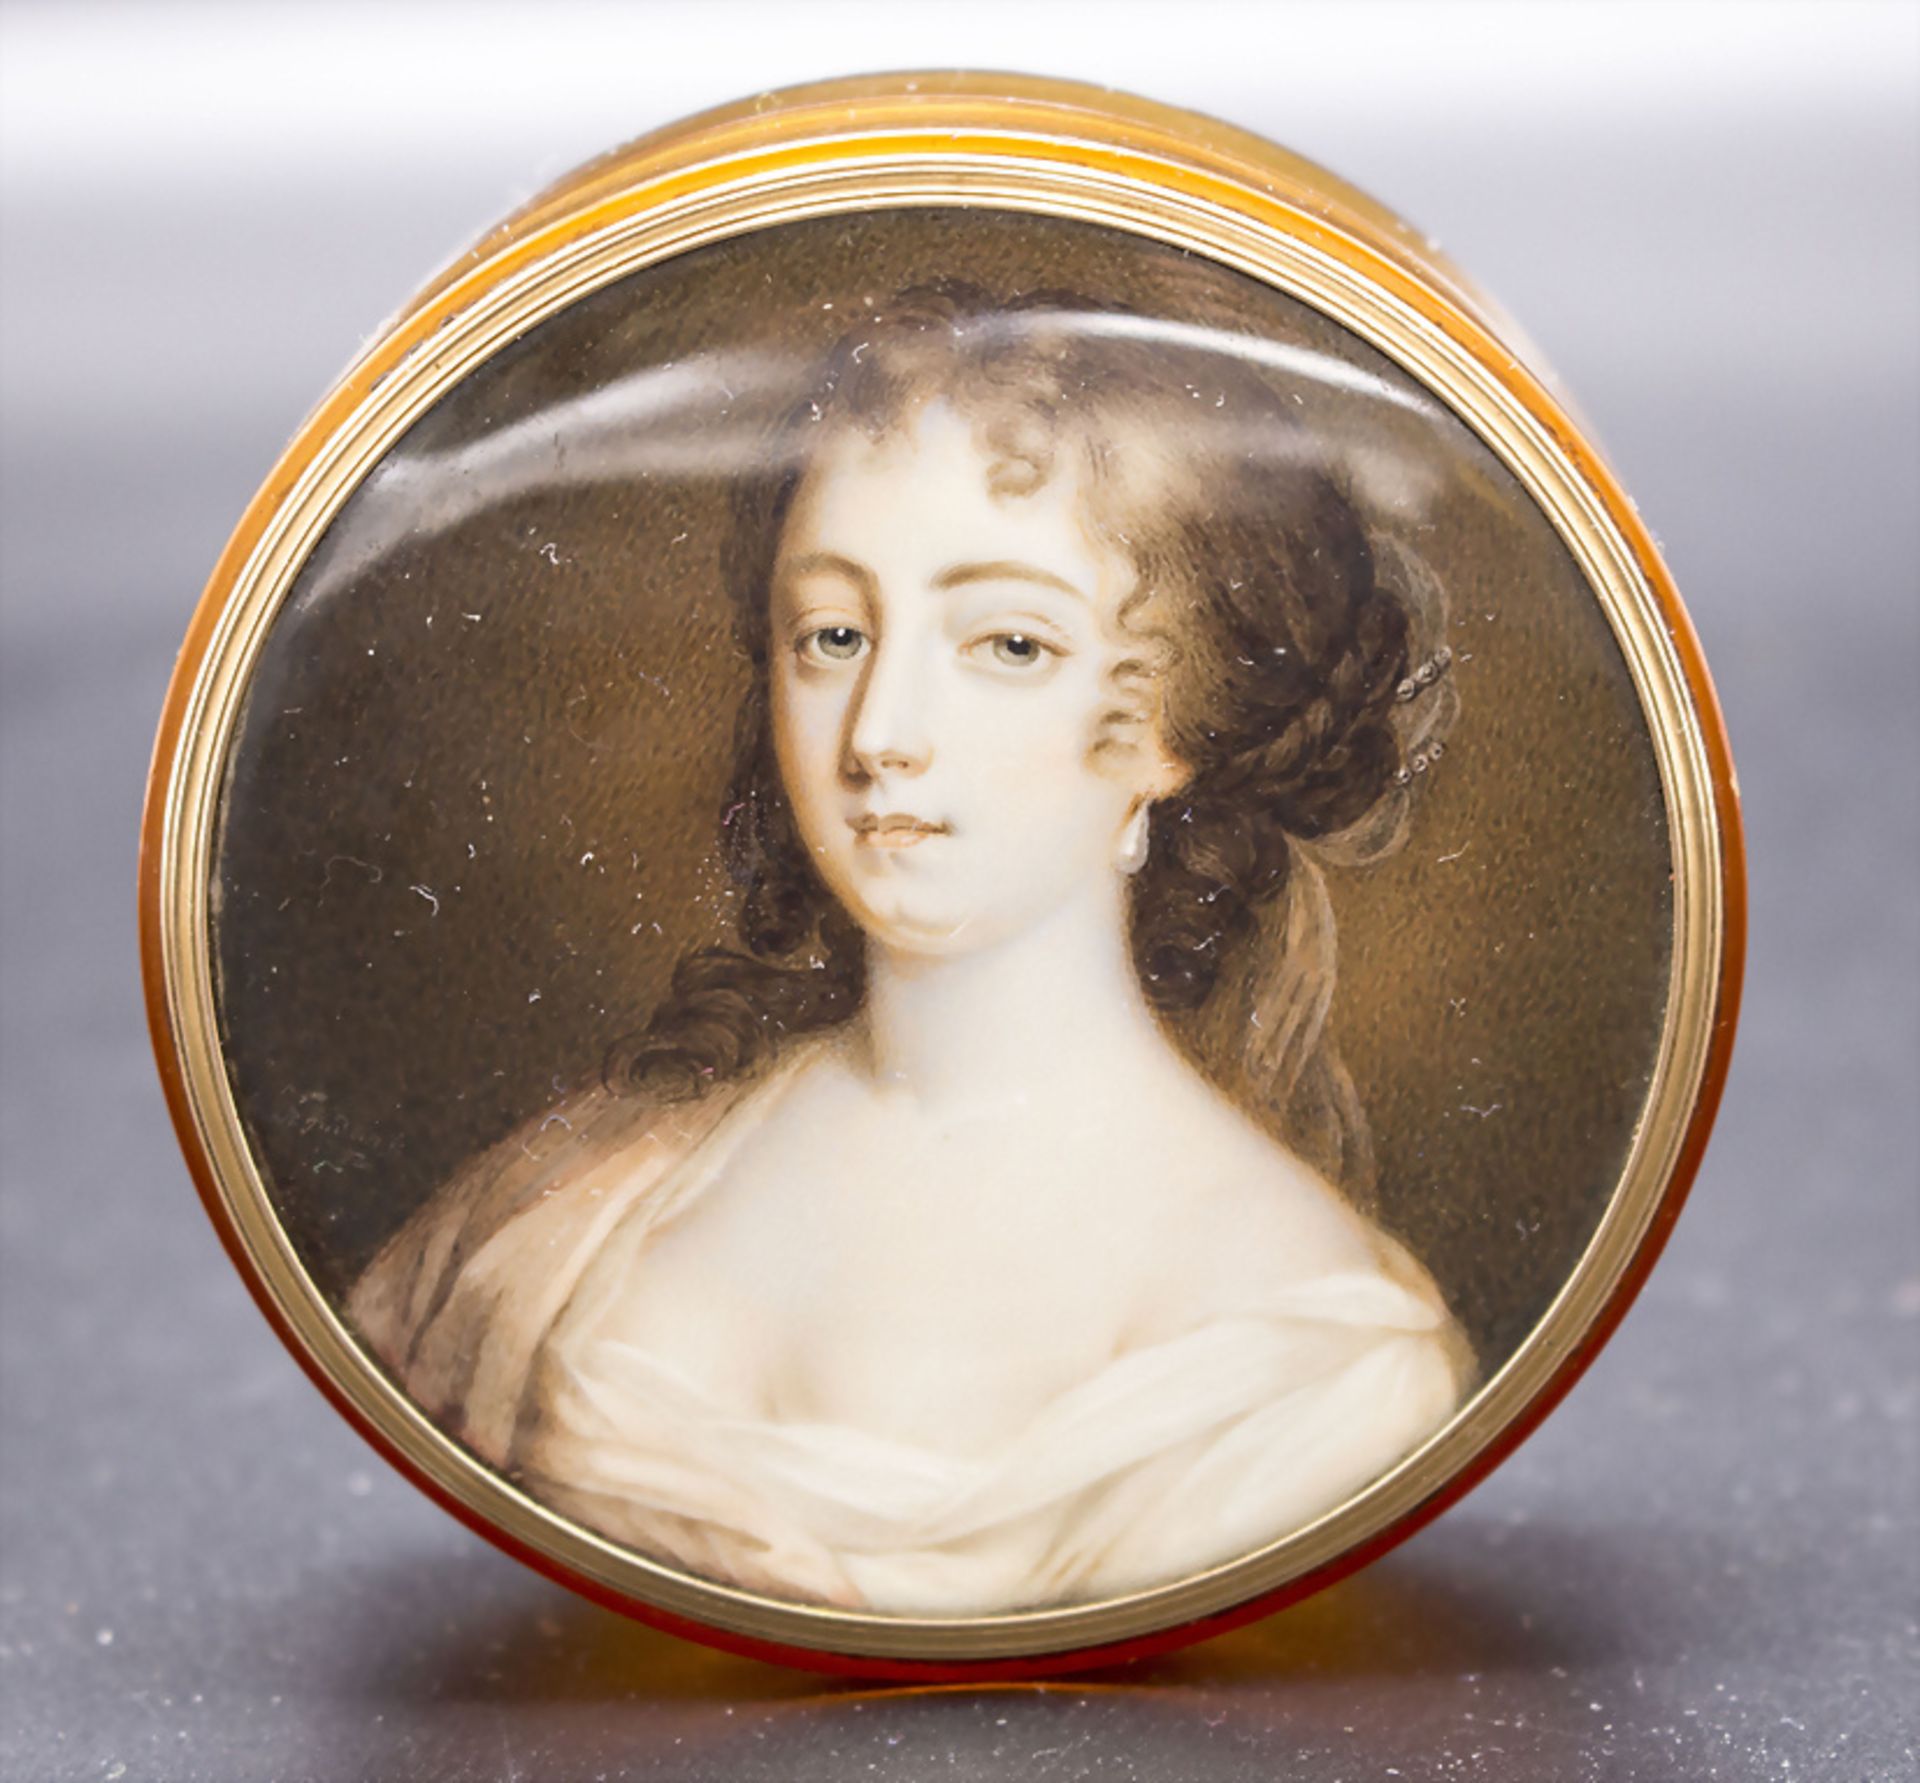 André Judlin, Louis-Seize Miniatur Porträit einer jungen Frau, Paris, um 1782 - Bild 4 aus 5